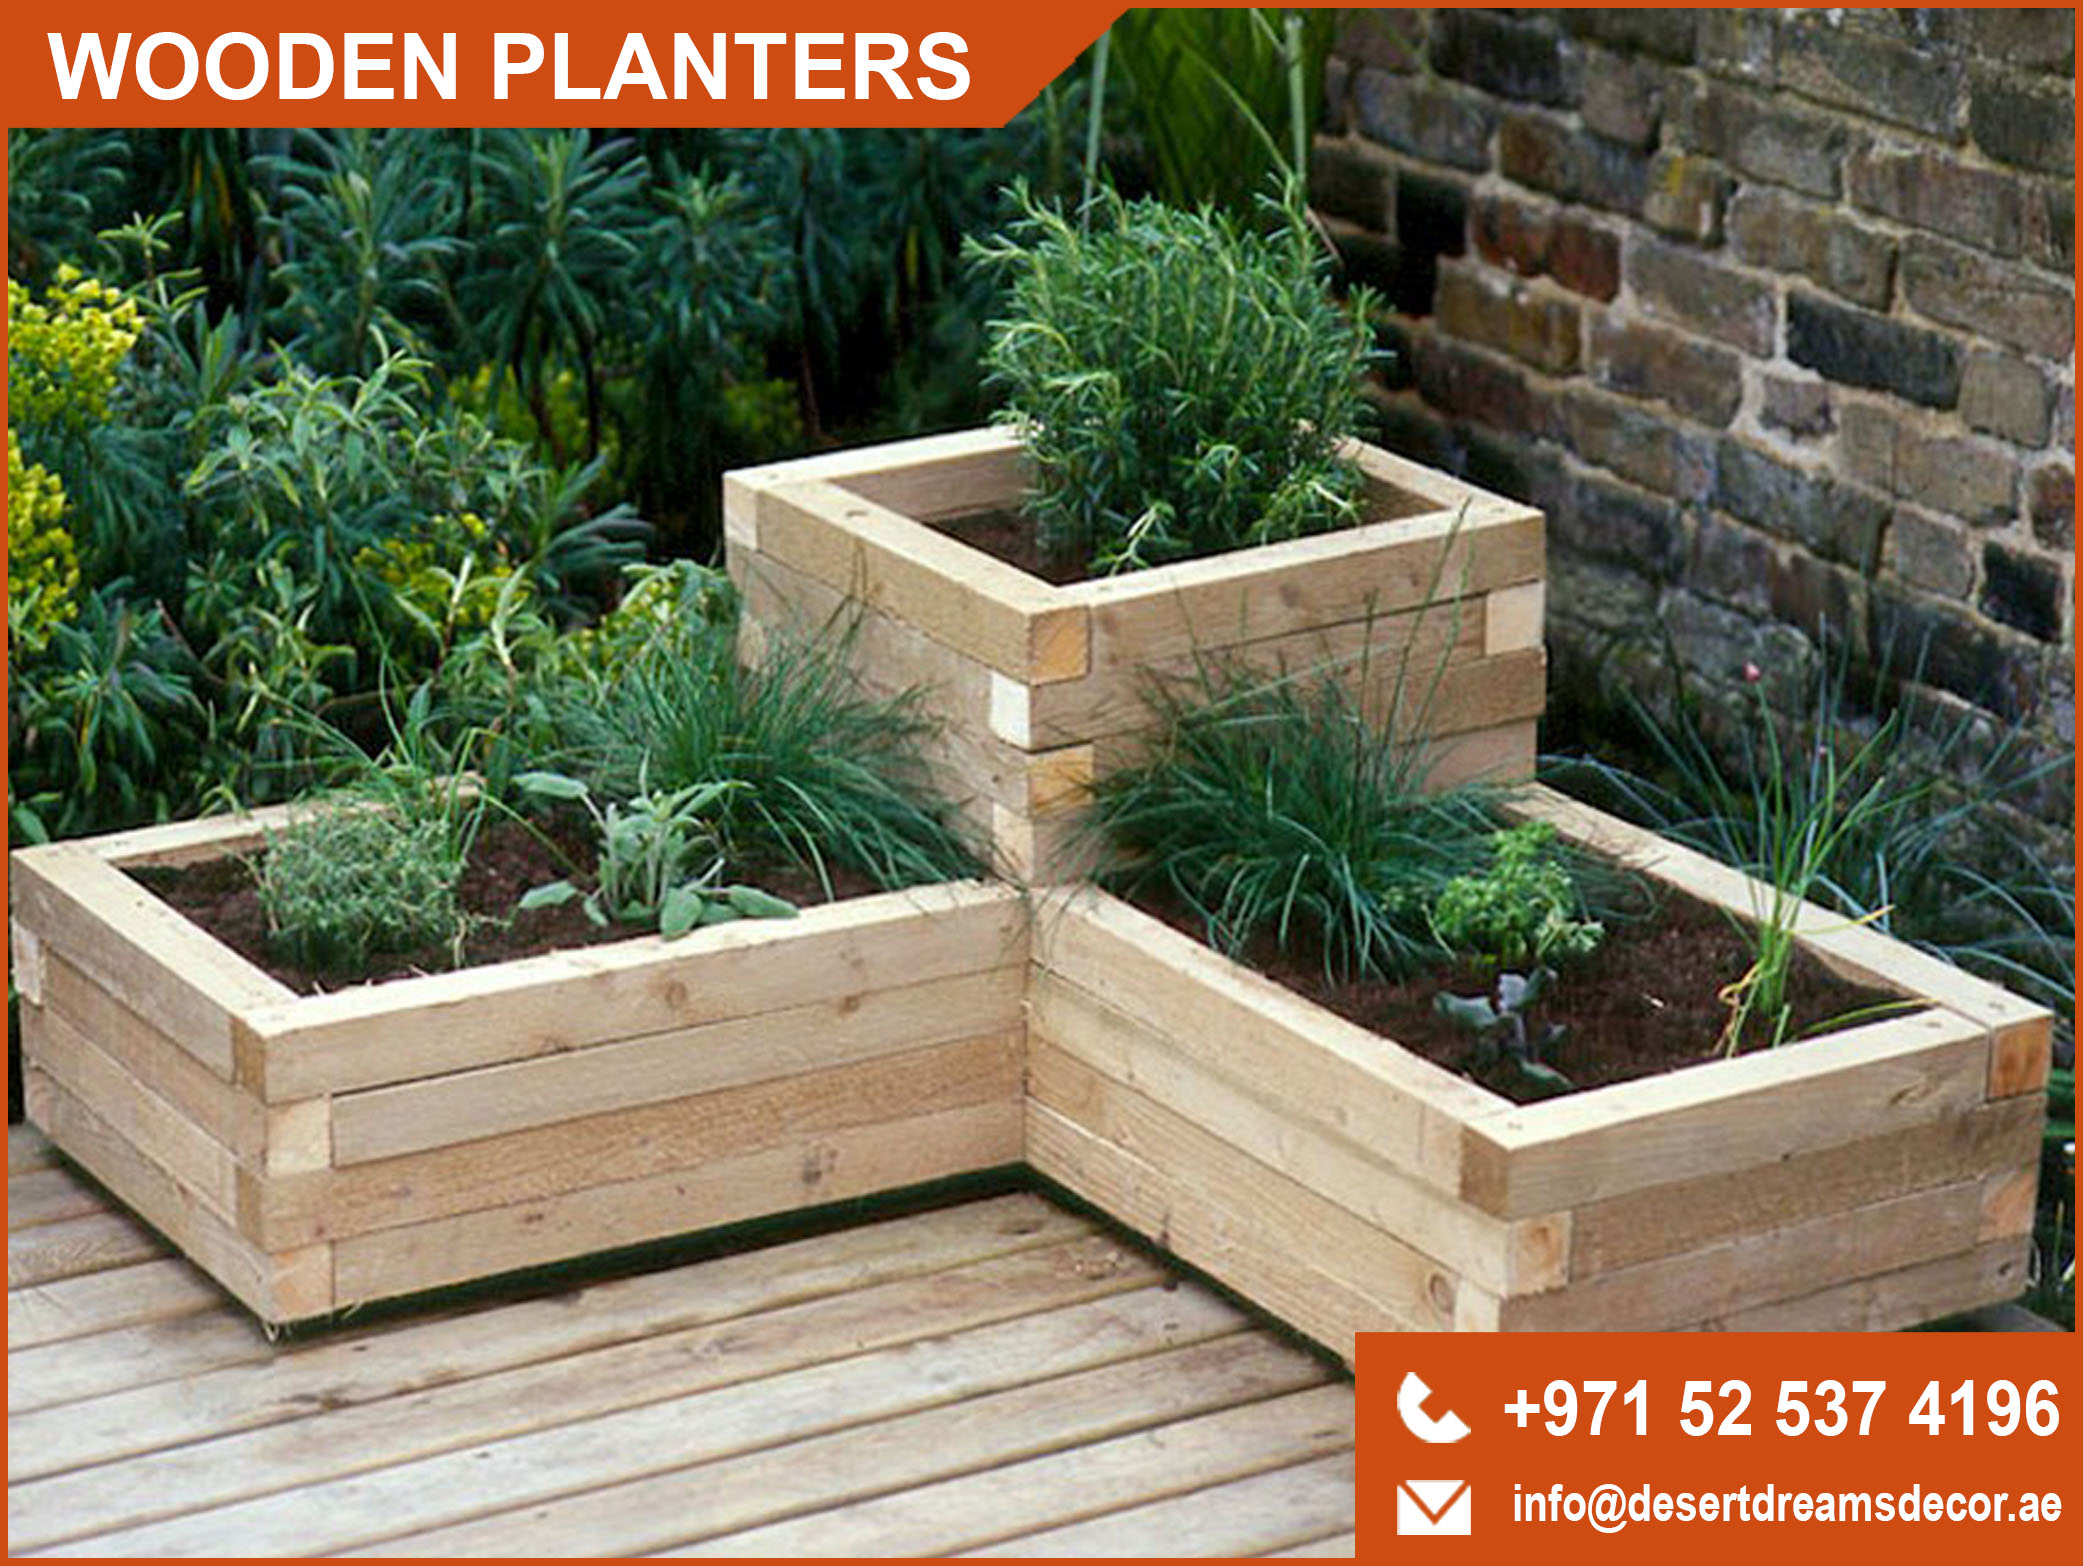 Wooden Planter Box Uae | Decorative Wooden Planter Supplies Uae.